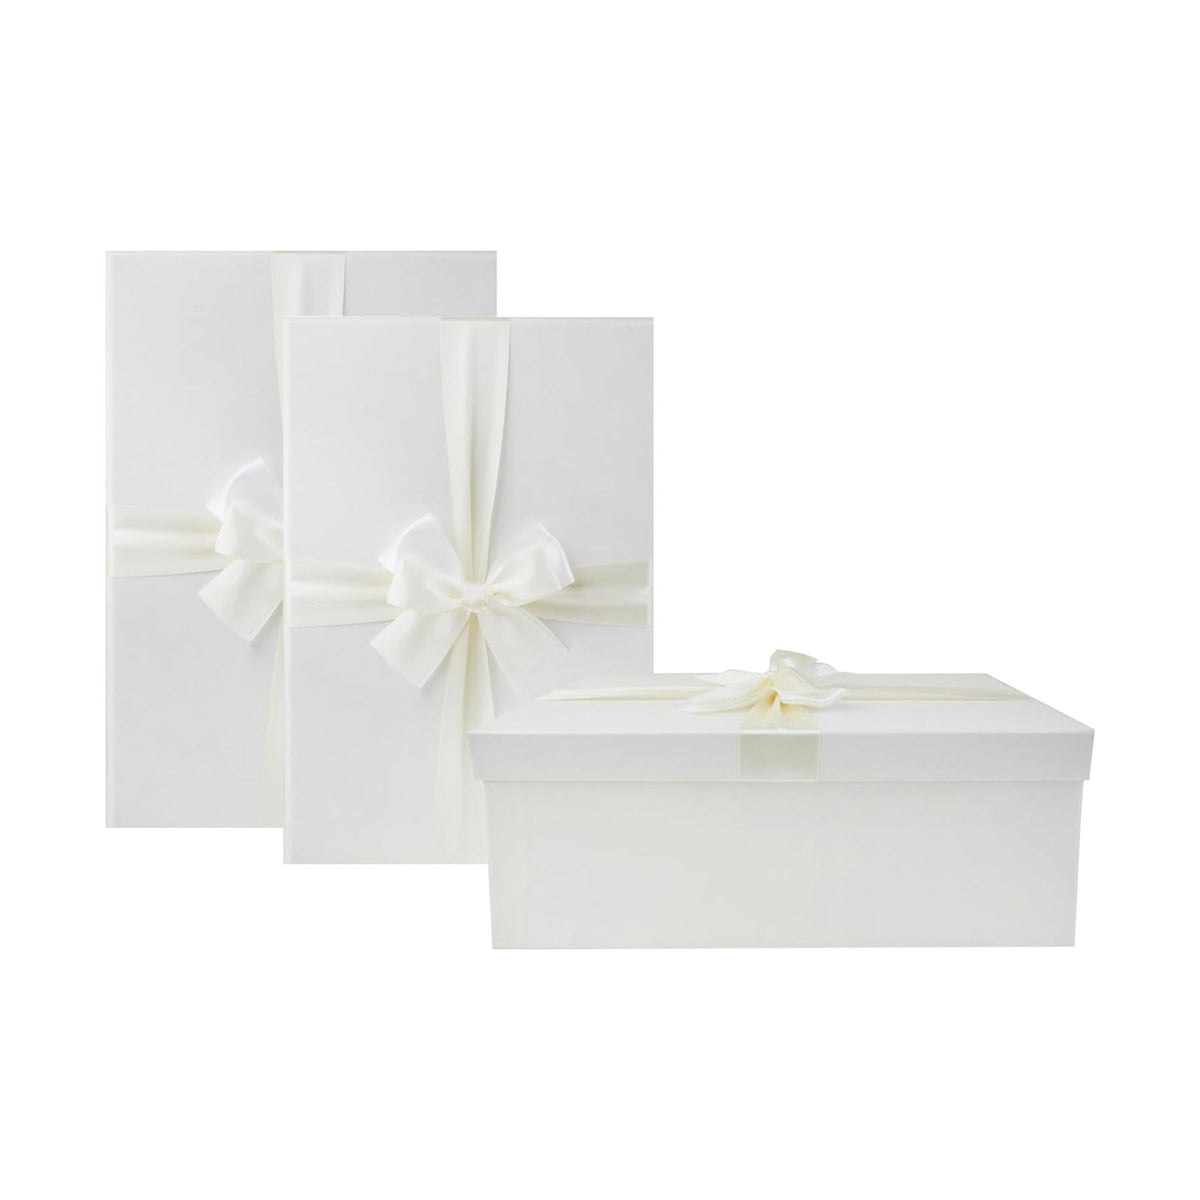 Luxury Oversized Ivory Gift Boxes - Set of 3